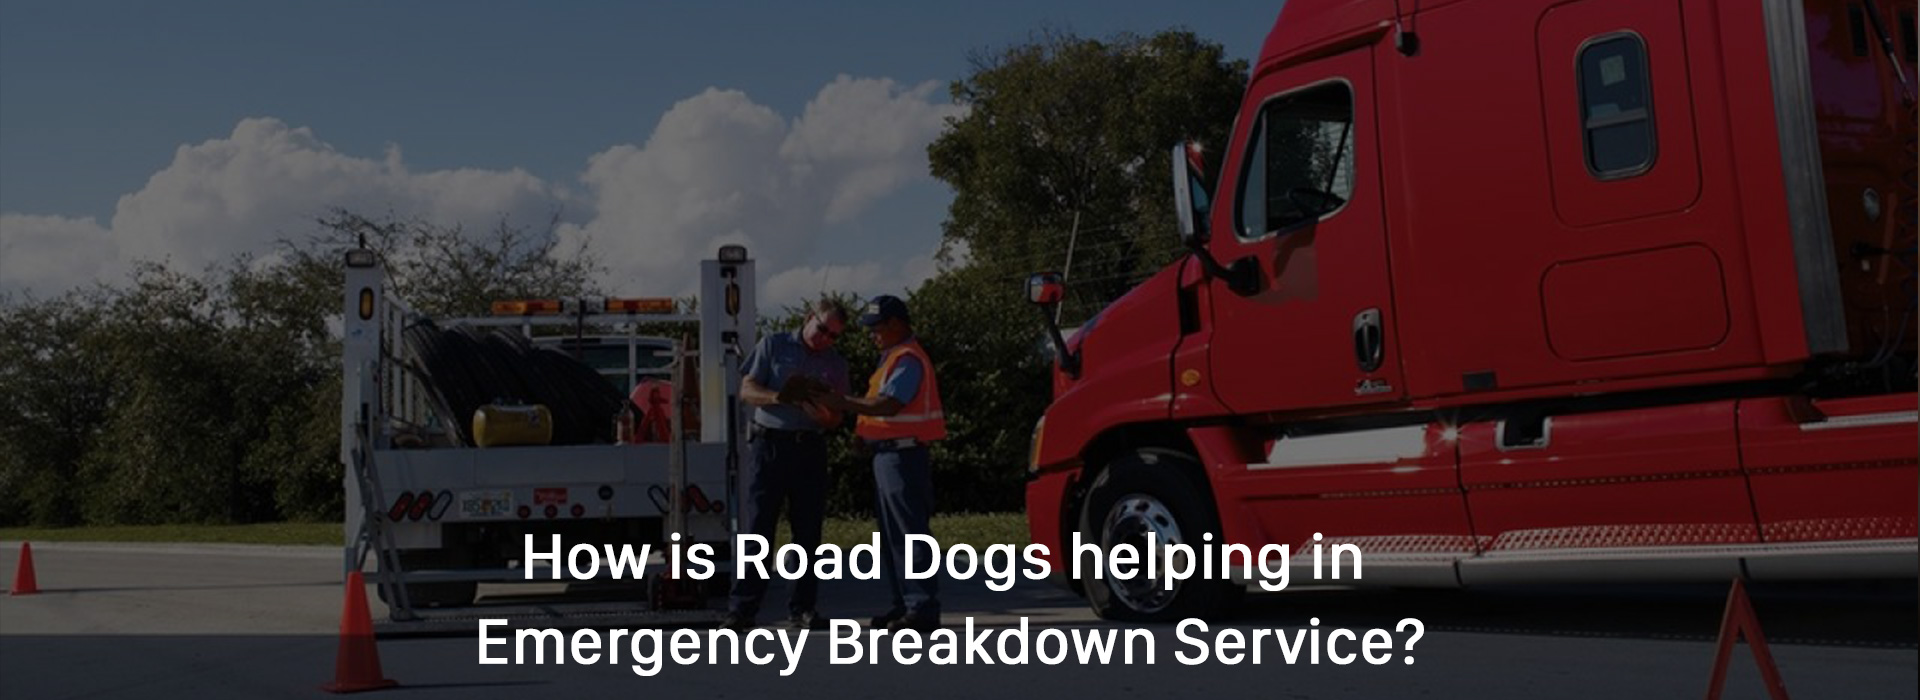 Emergency Breakdown Service